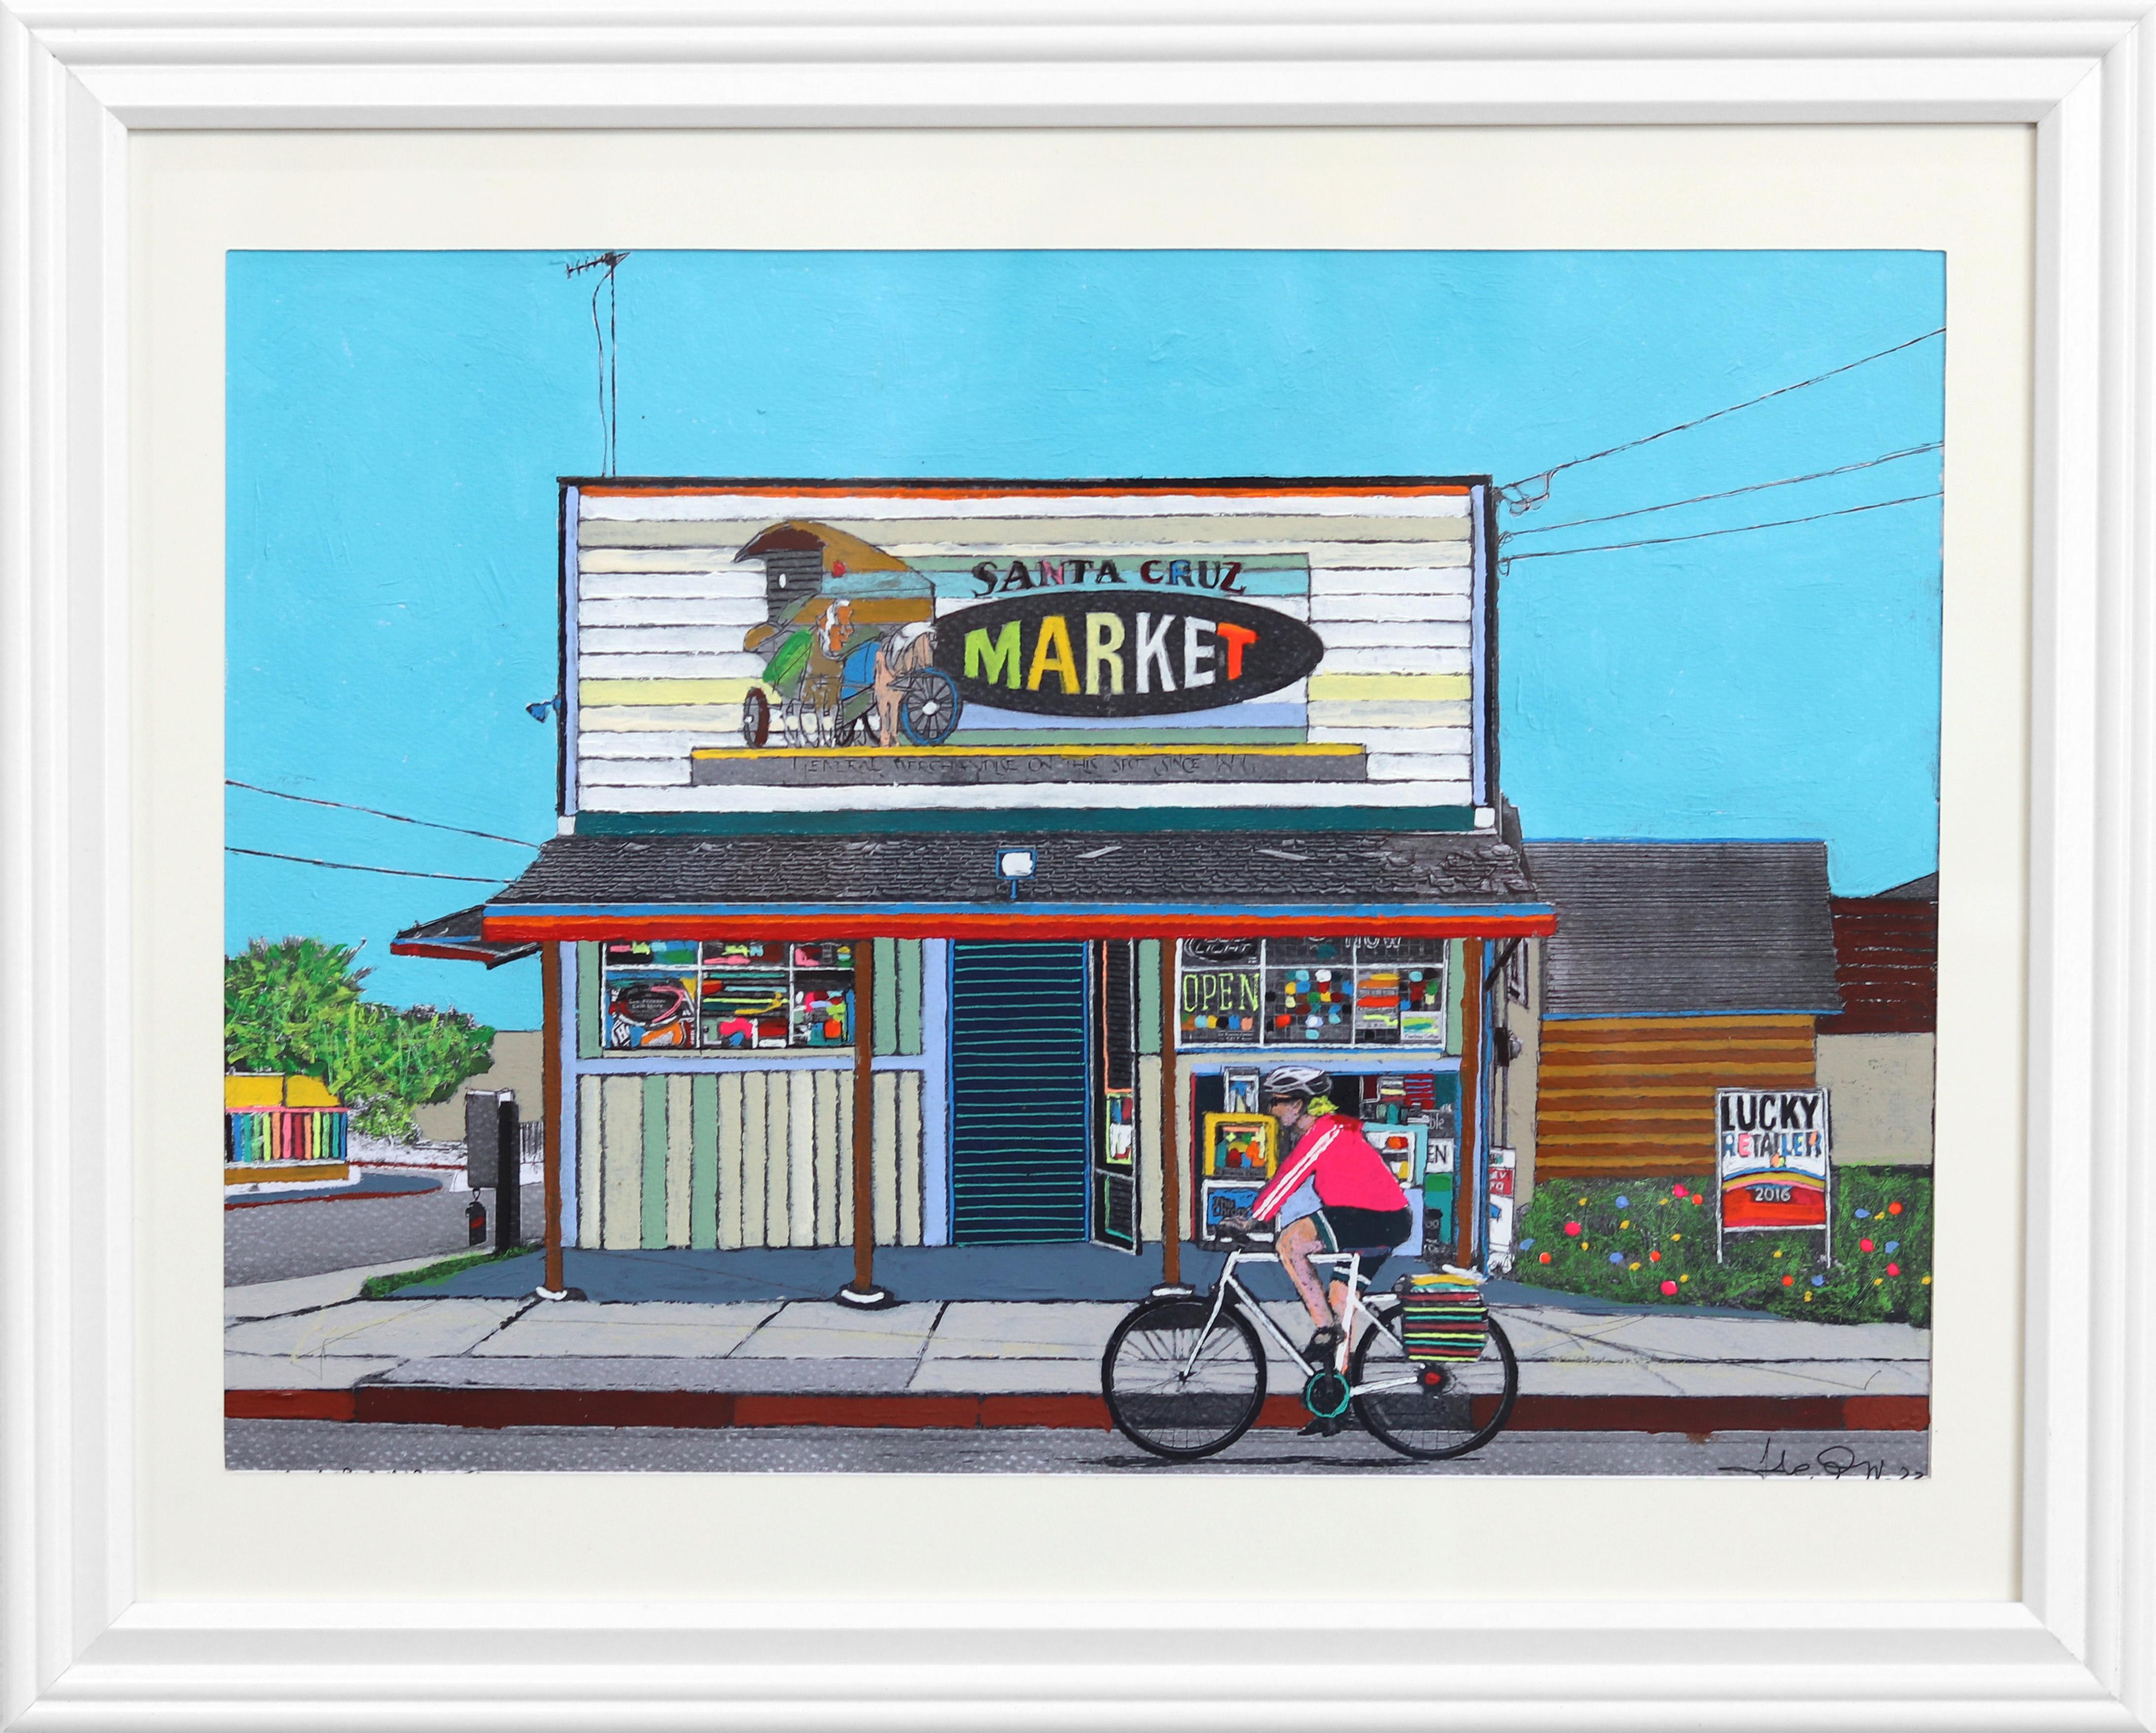 Market de Santa Cruz - Encadré Original Urban Colorful Authentic Environment Art - Mixed Media Art de Fabio Coruzzi